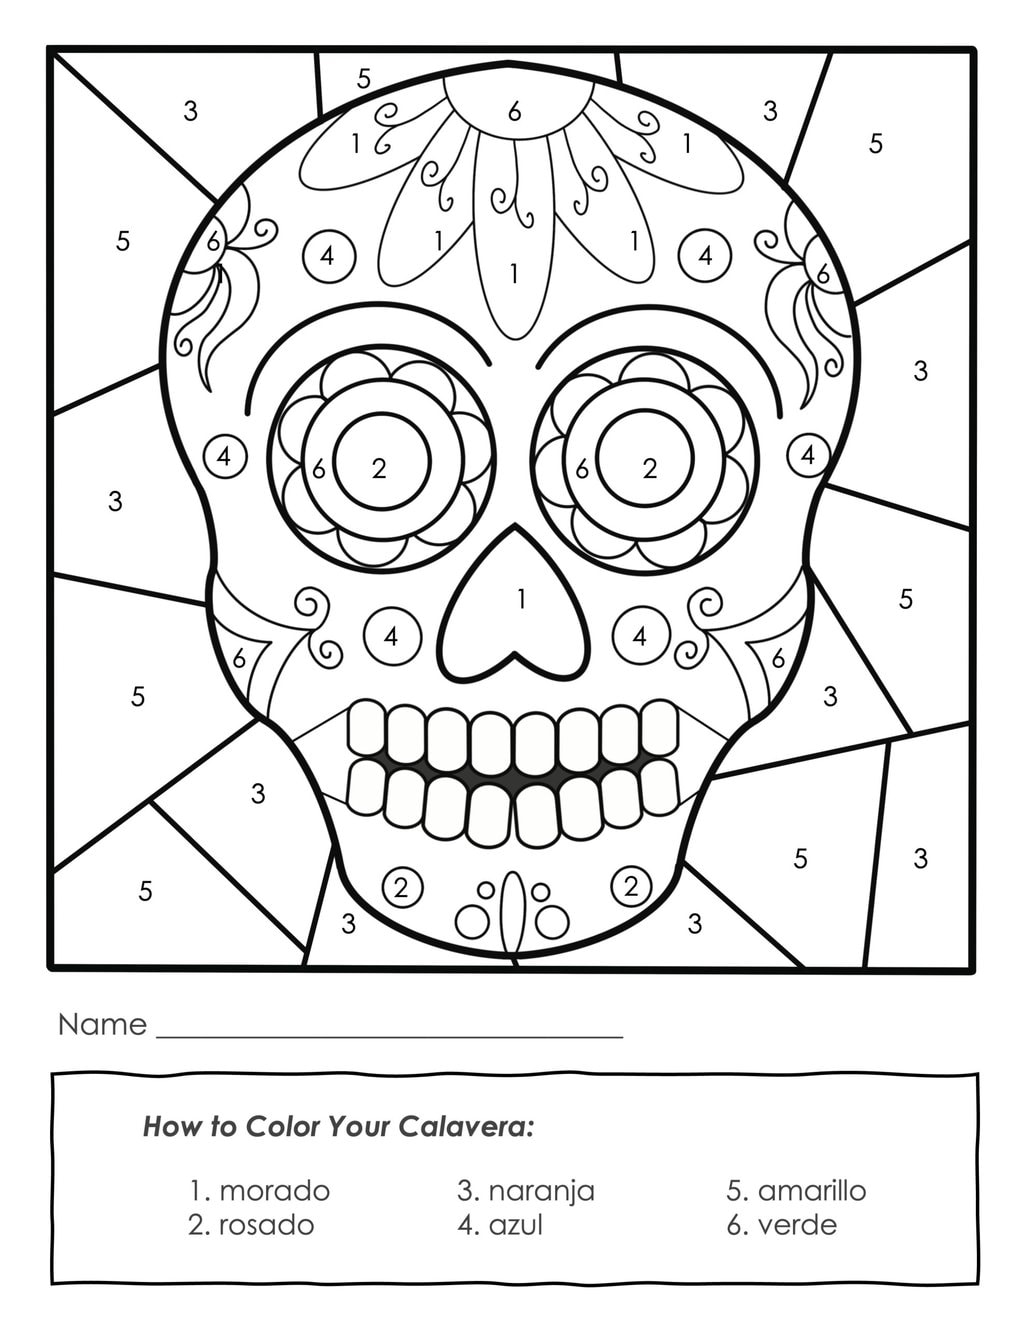 dia de los muertos coloring masks